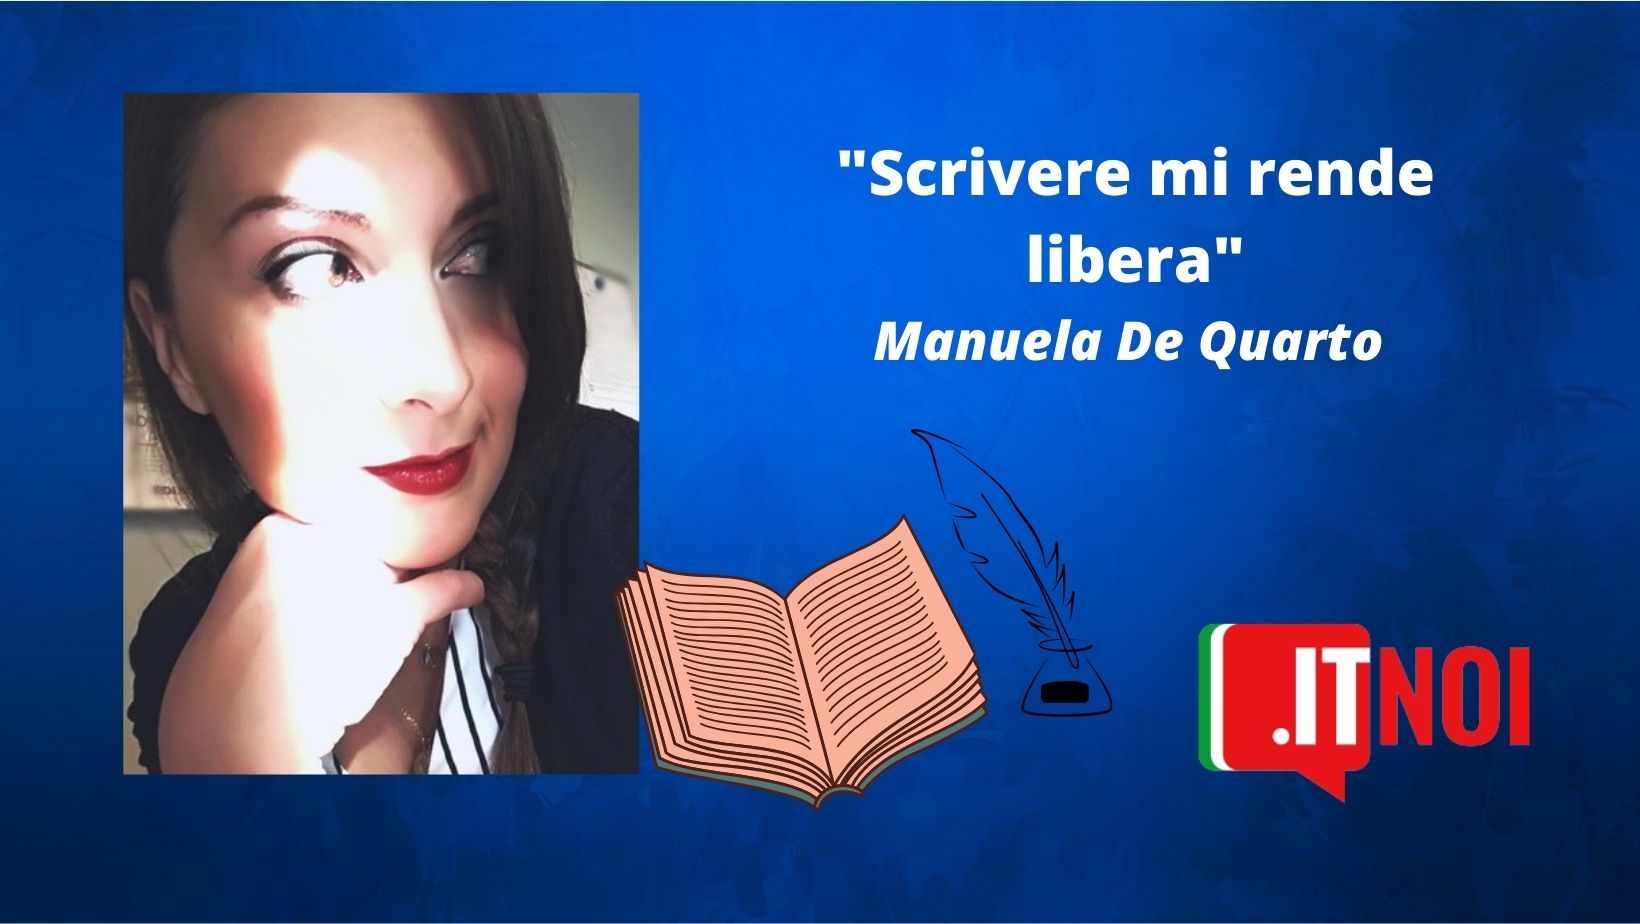 Manuela De Quarto – itCatania: vengo dalla terra della pietra lavica e del Mar Ionio